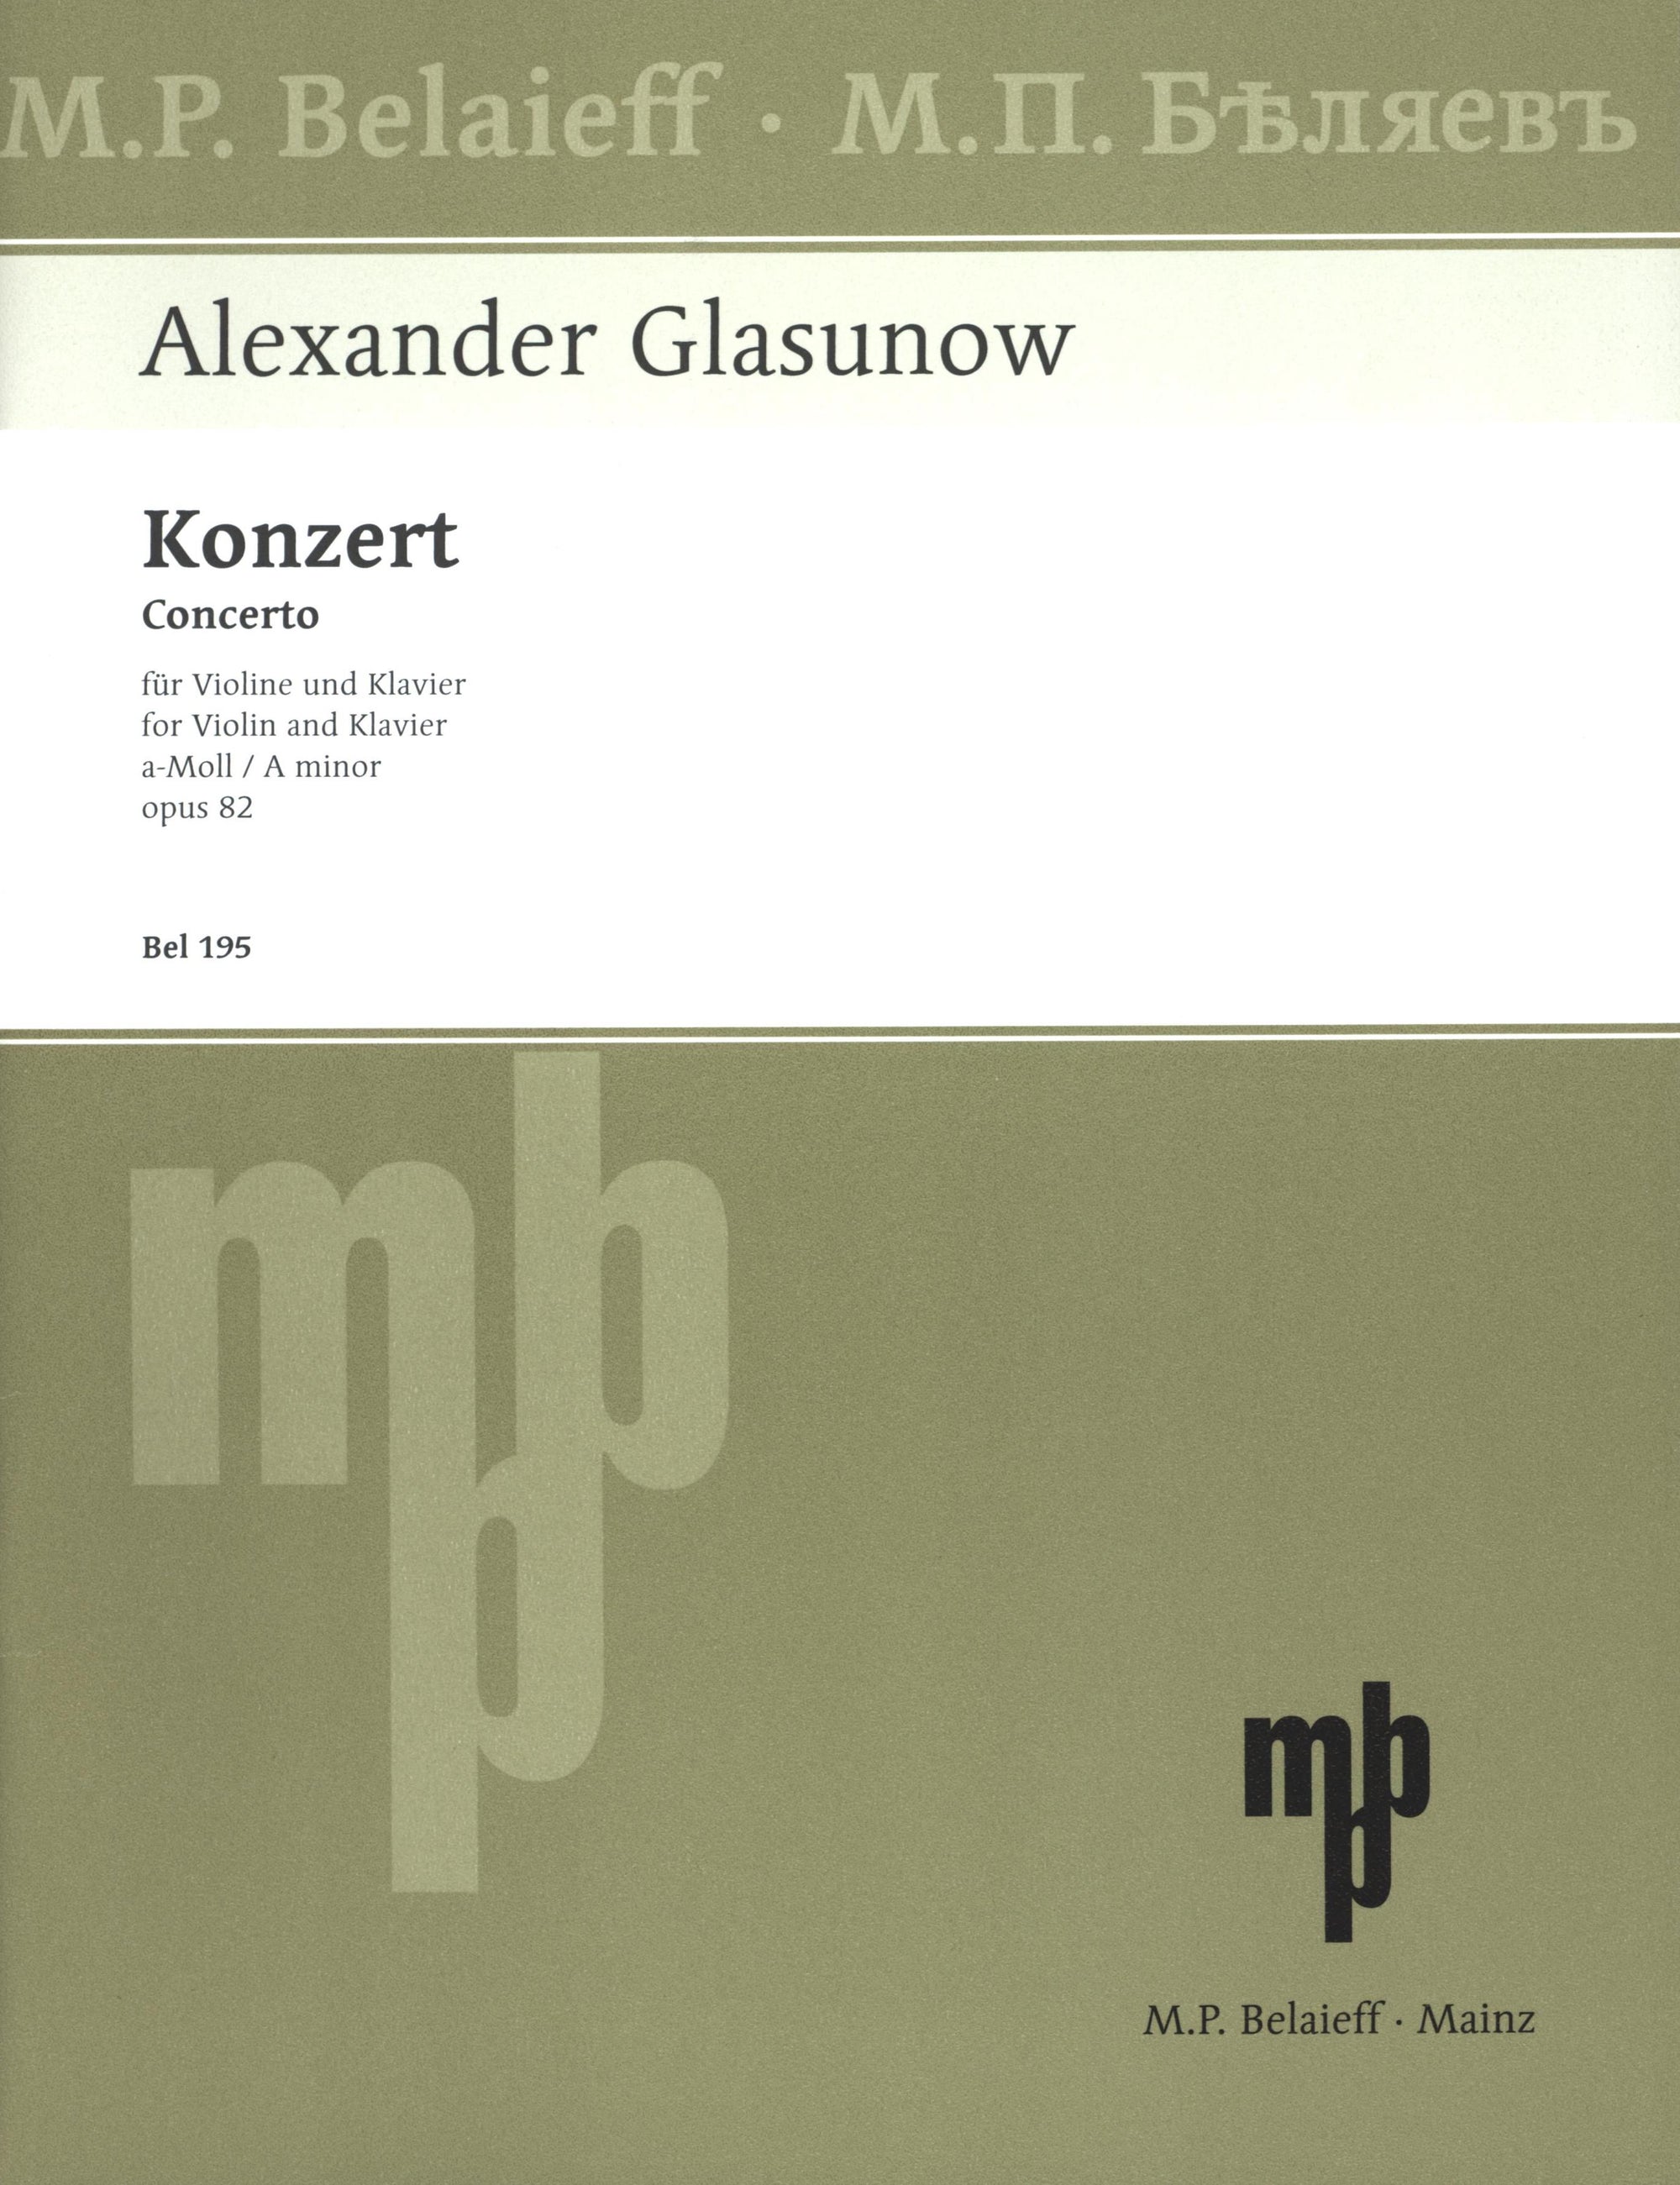 Glazunov: Violin Concerto in A Minor, Op. 82